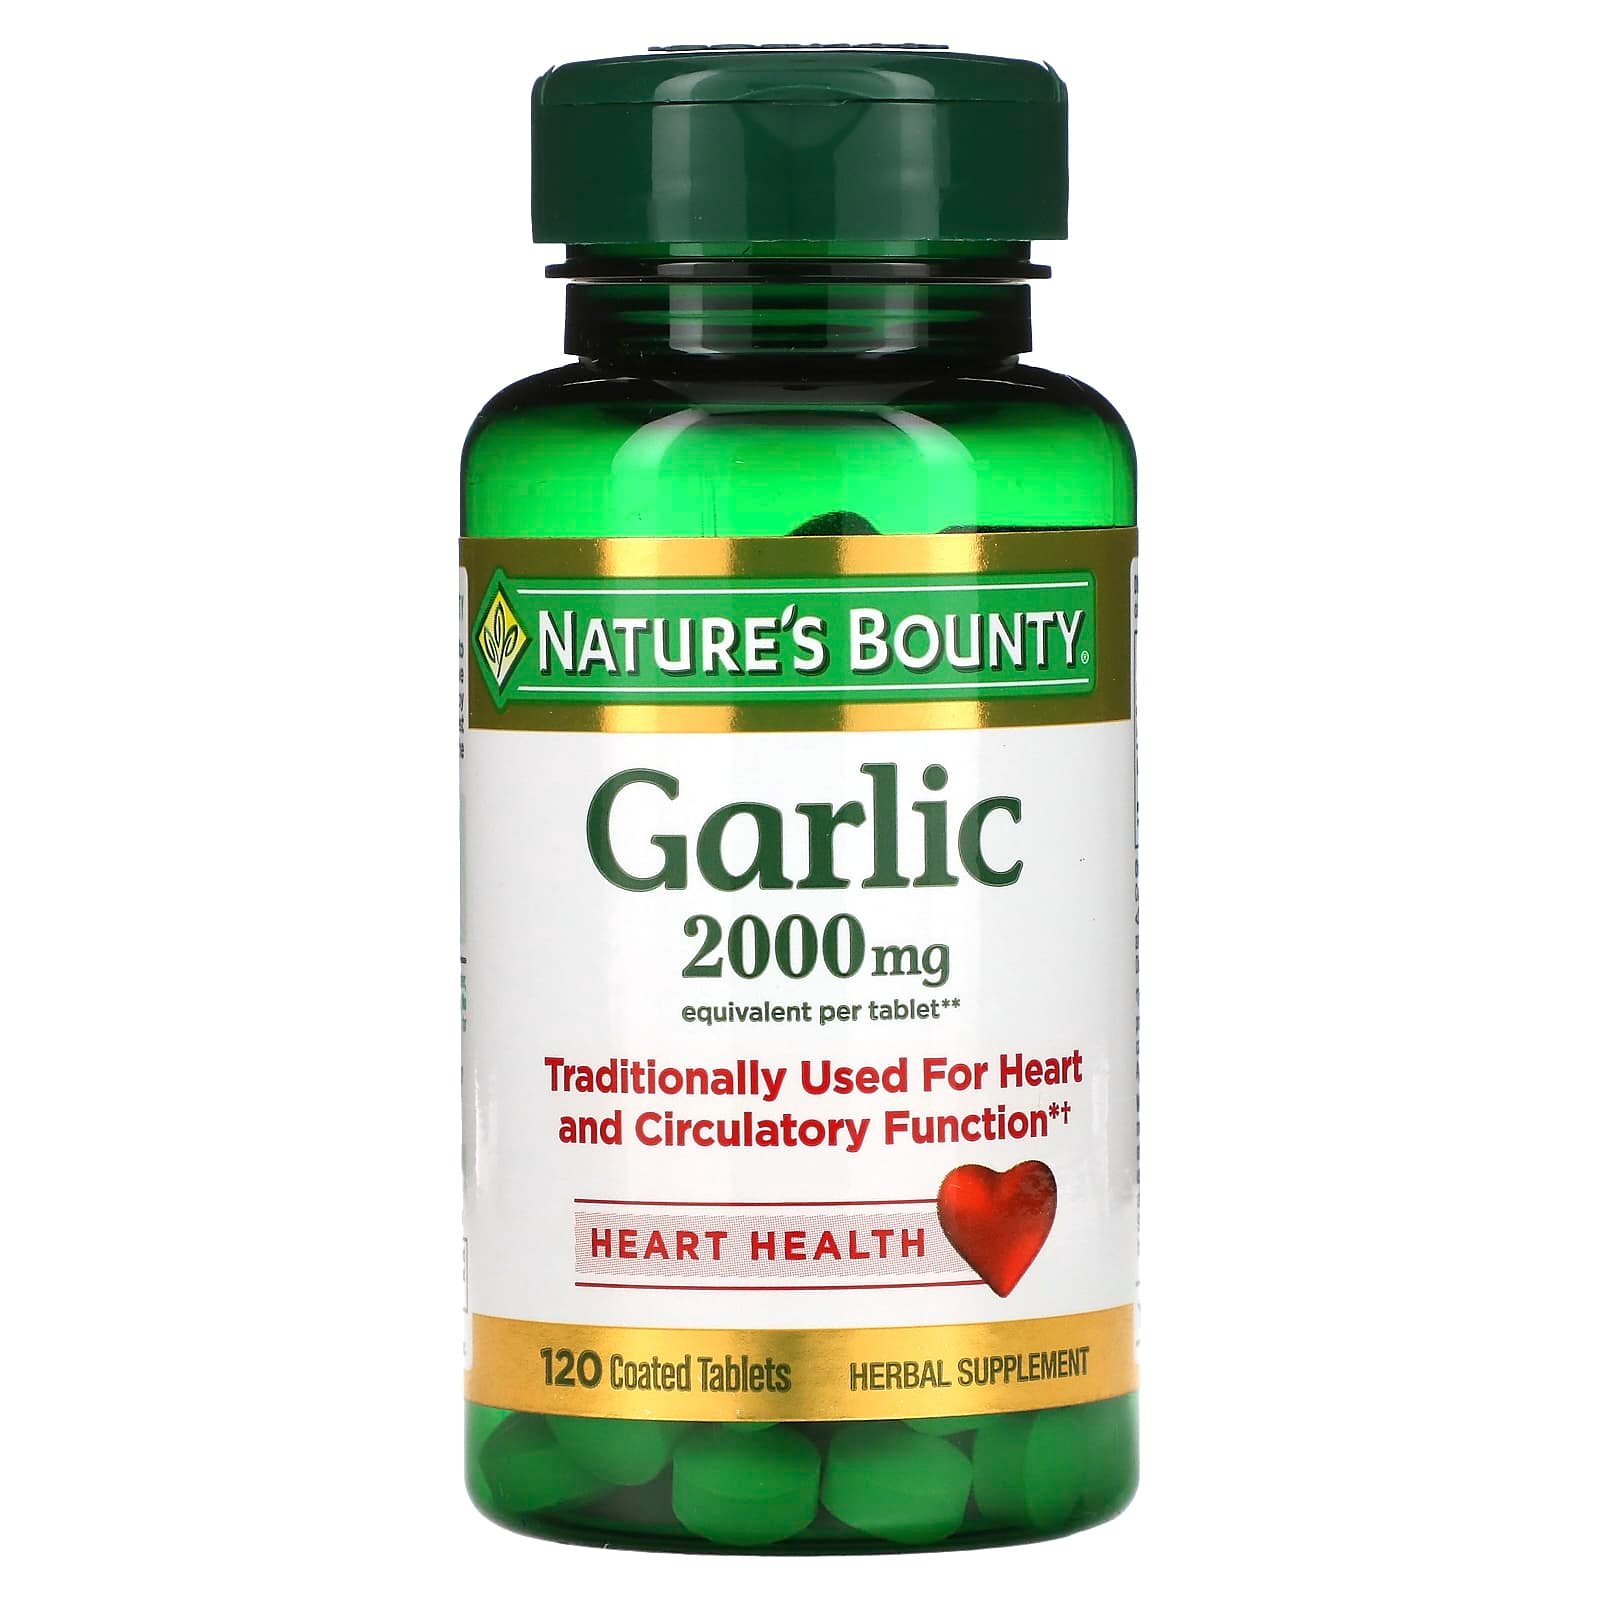 Nature'S Bounty Garlic 2000Mg Price In Uae